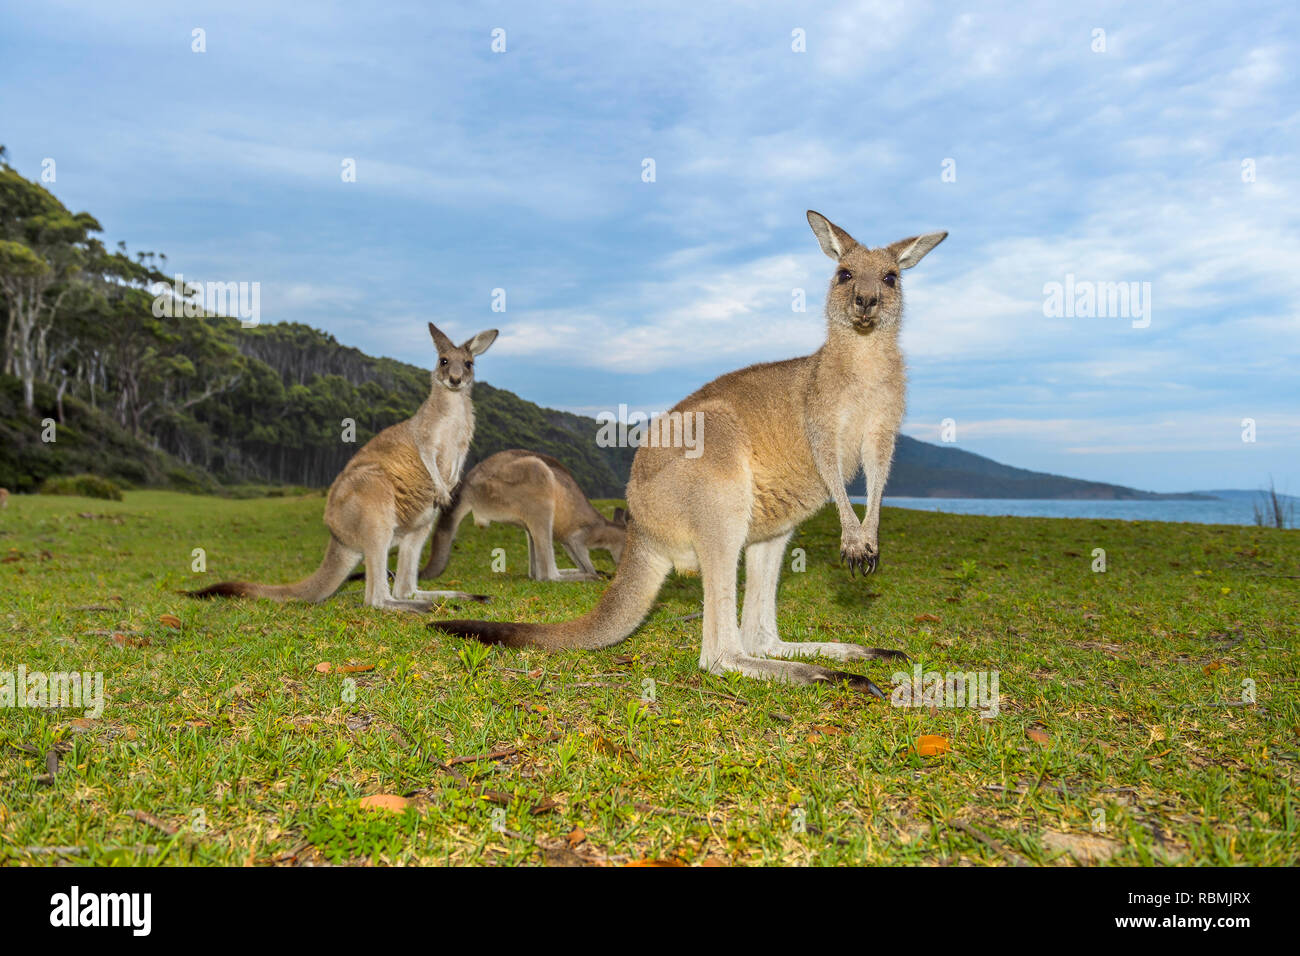 Grey Kangaroo, Macropus giganteus, tree Animals, Murramarang National Park, New South Wales, Australia Stock Photo